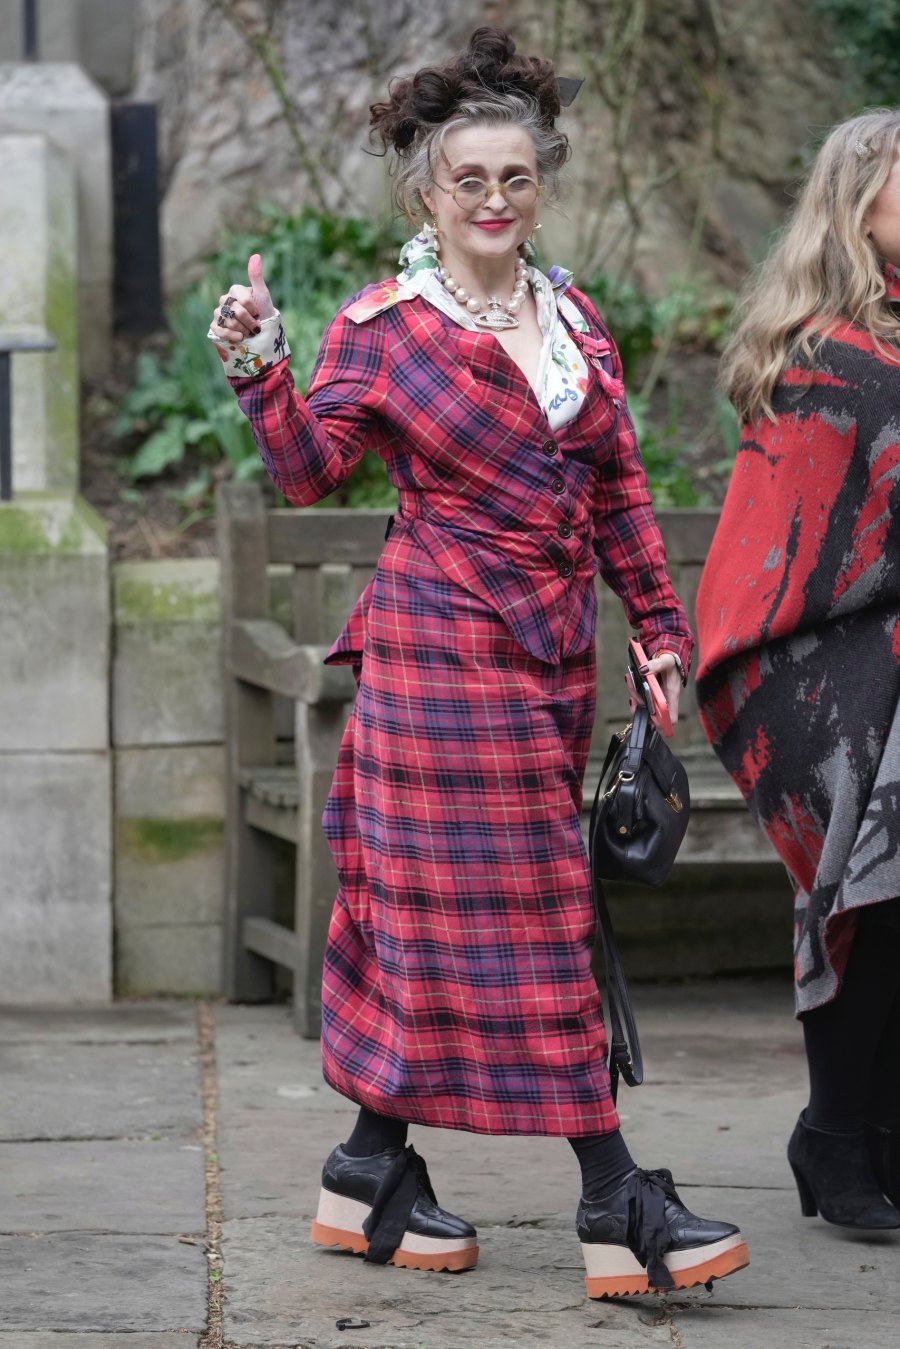 Στο μνημόσυνο της Vivienne Westwood το dress code ήταν αφιερωμένο στο έργο της μεγάλης σχεδιάστριας